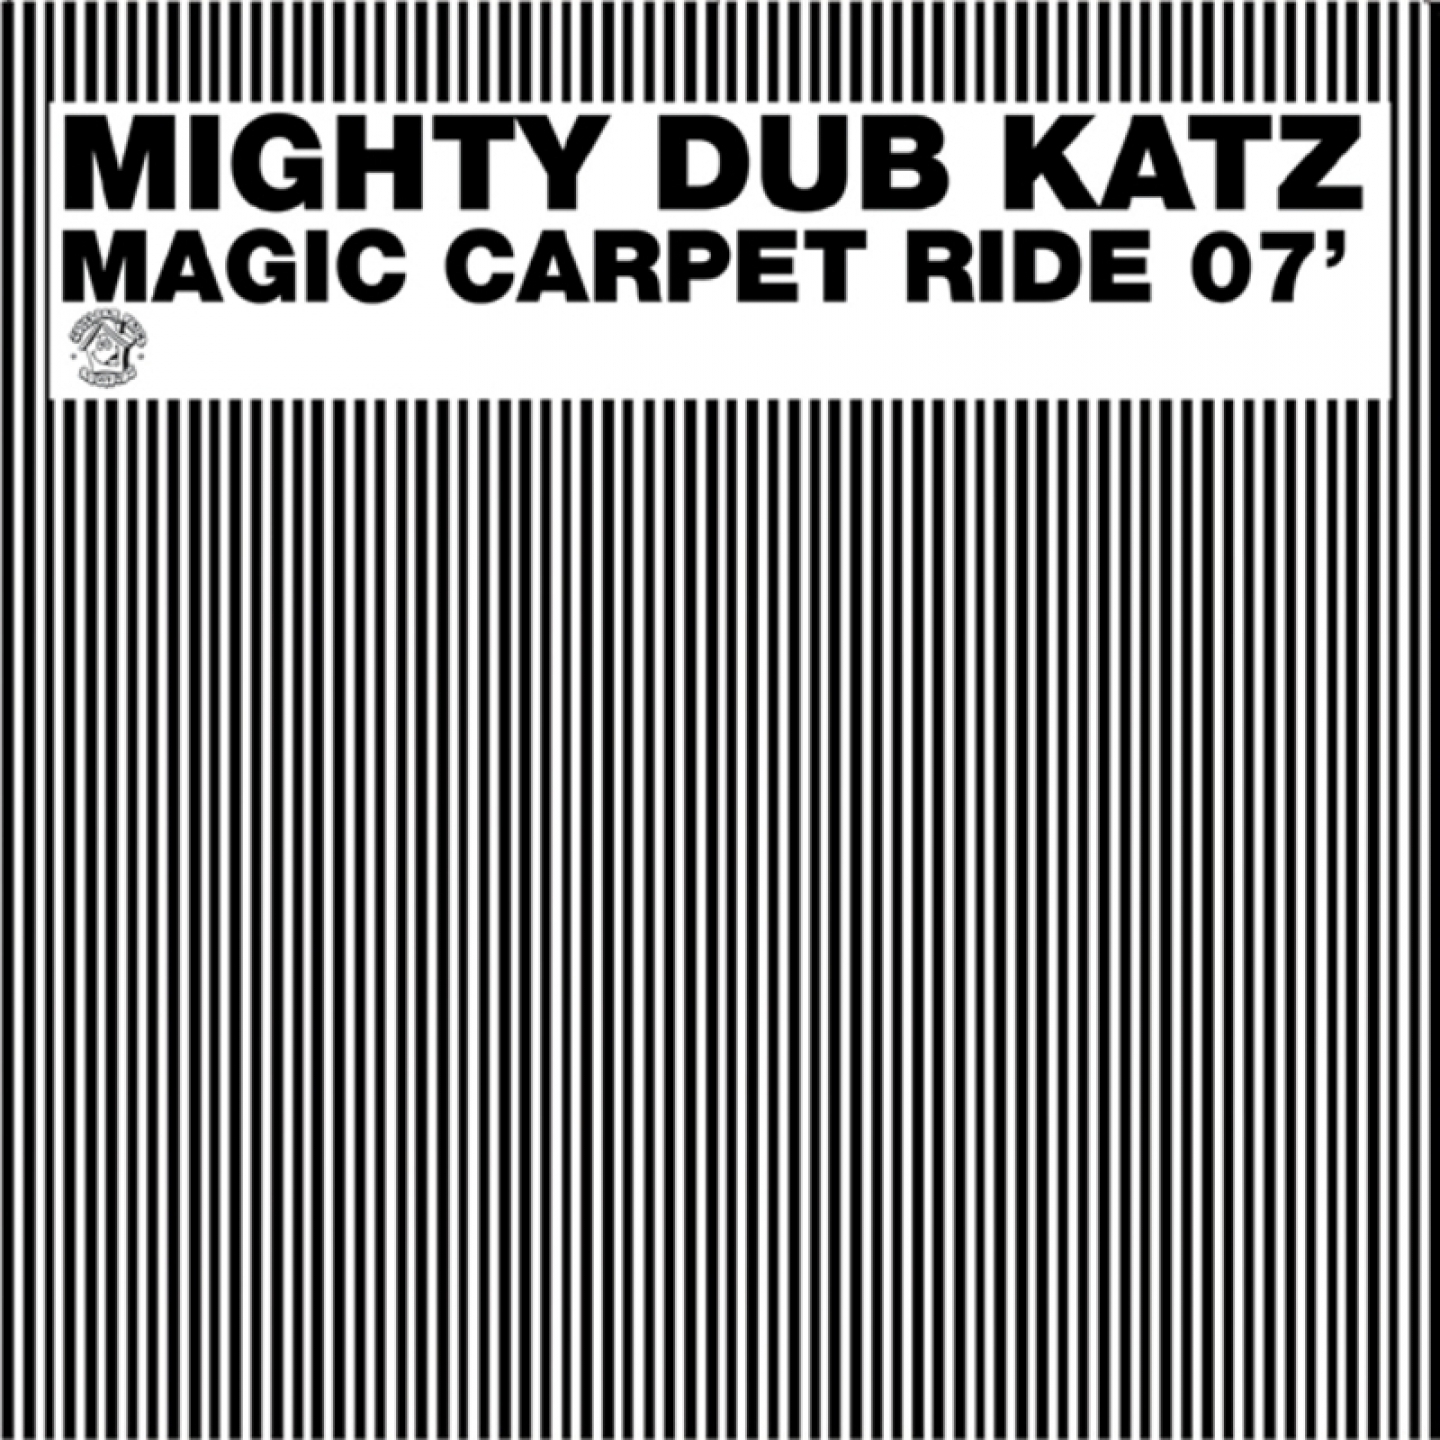 Magic Carpet Ride 07'